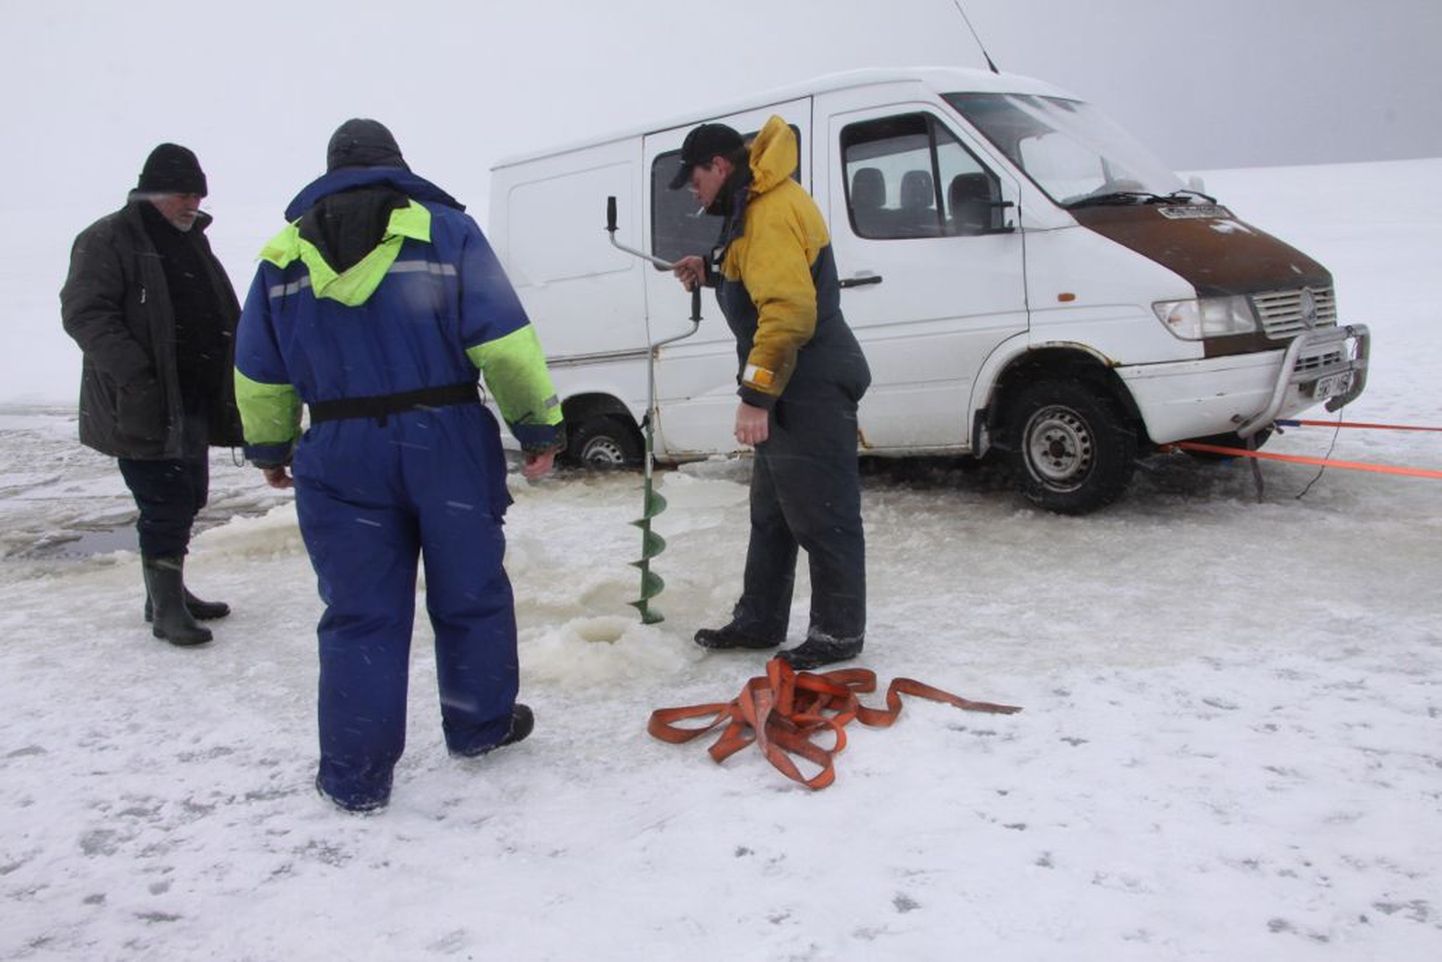 Pärnu lahel vajus läbi jää Viljandimaa kalameeste Mercedese kaubik. Kaubikus olnud viis meest pääsesid sõidukist välja ja asusid masinat päästma.